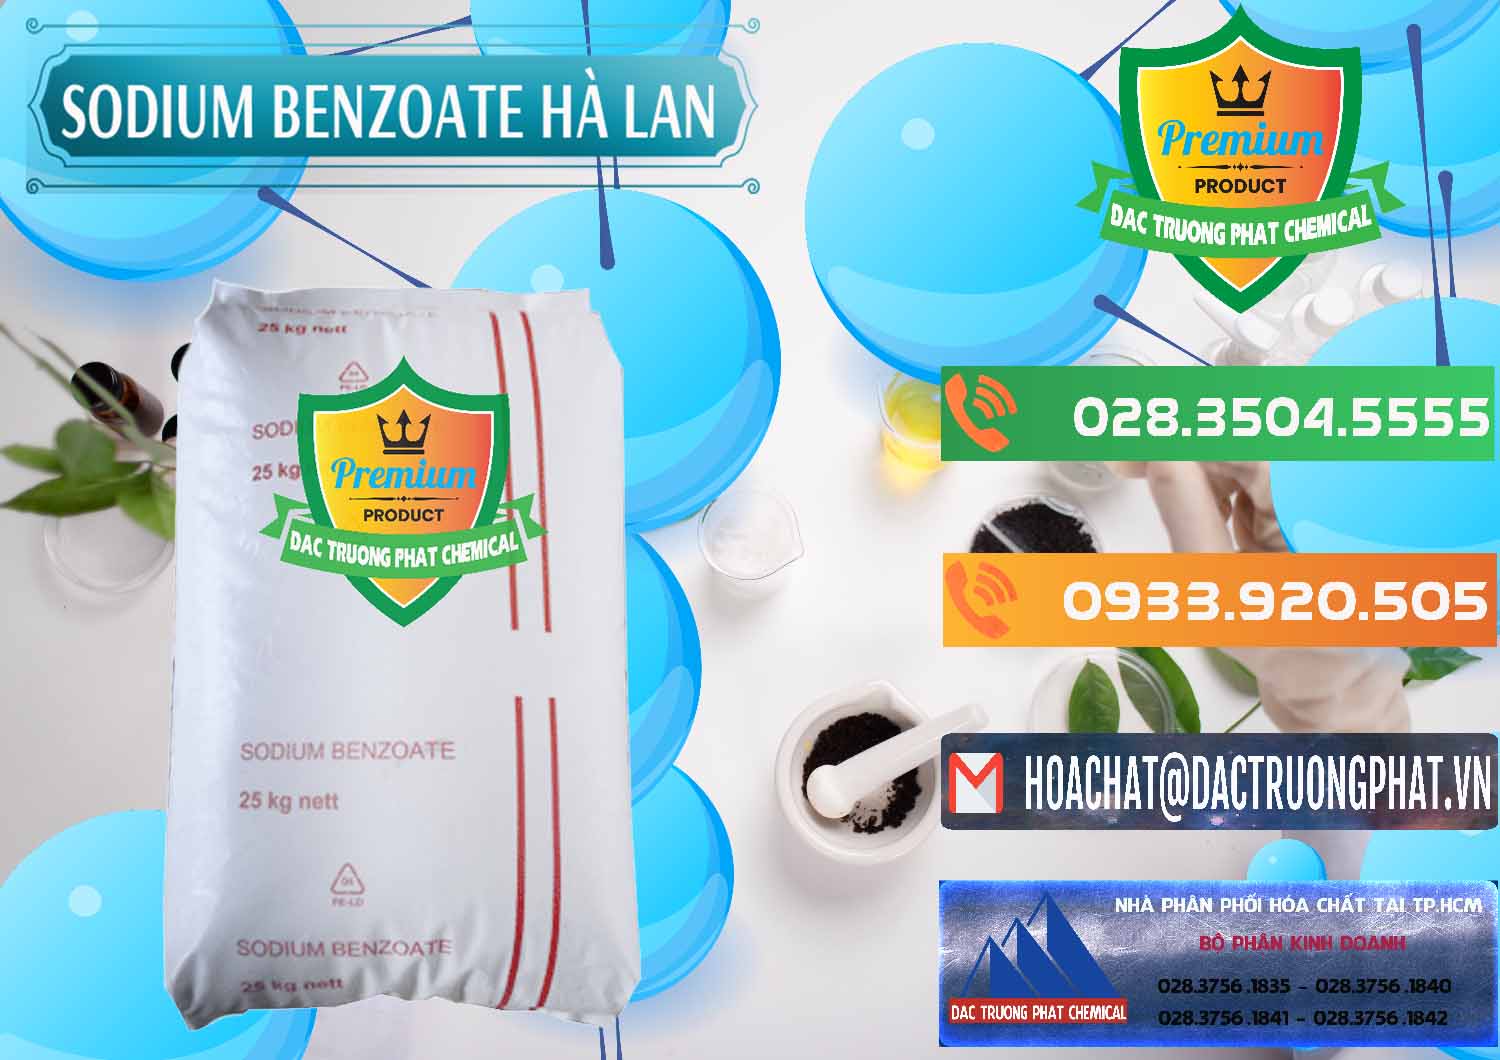 Công ty cung cấp - bán Sodium Benzoate - Mốc Bột Chữ Cam Hà Lan Netherlands - 0360 - Chuyên cung cấp ( nhập khẩu ) hóa chất tại TP.HCM - hoachatxulynuoc.com.vn